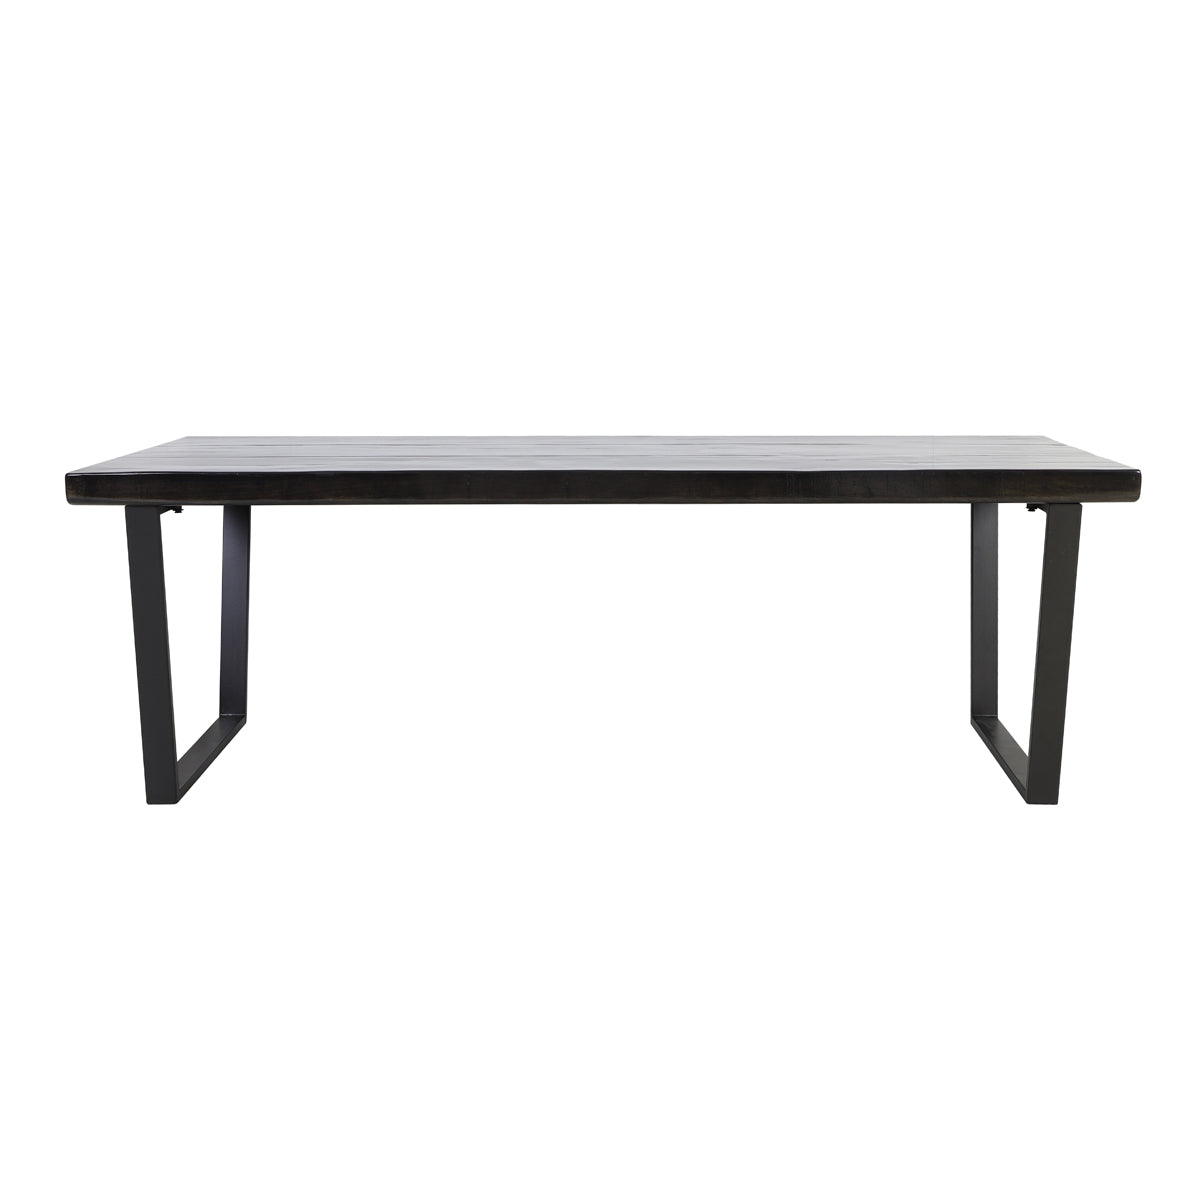 Aerina Dining Table with Shiny Black Finish - Large